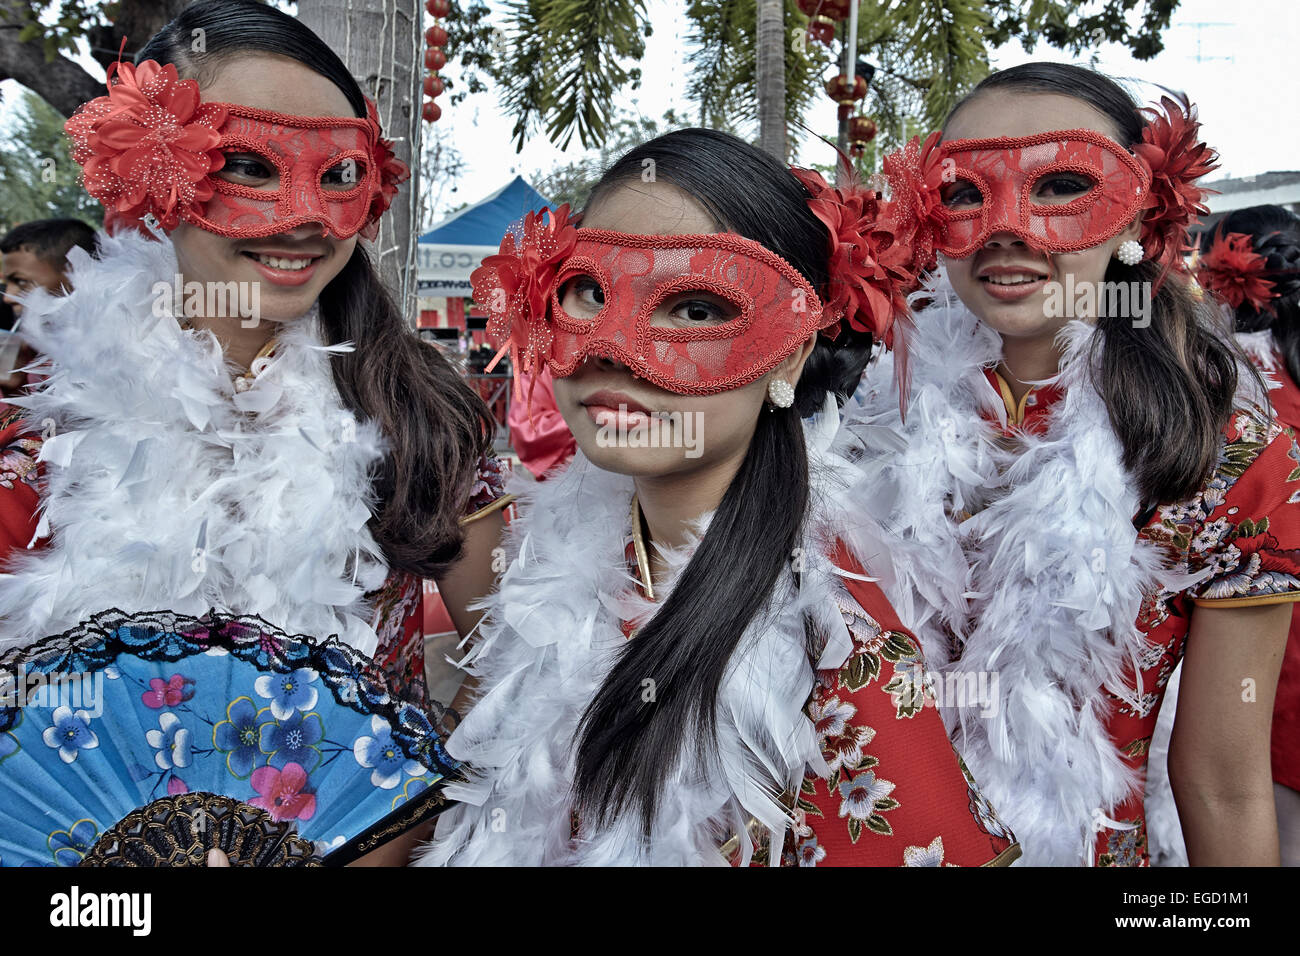 Eyemask. Trois jeunes filles thaïlandaises portant un masque oculaire pour une mascarade de rue. Nouvel an chinois Thaïlande Banque D'Images